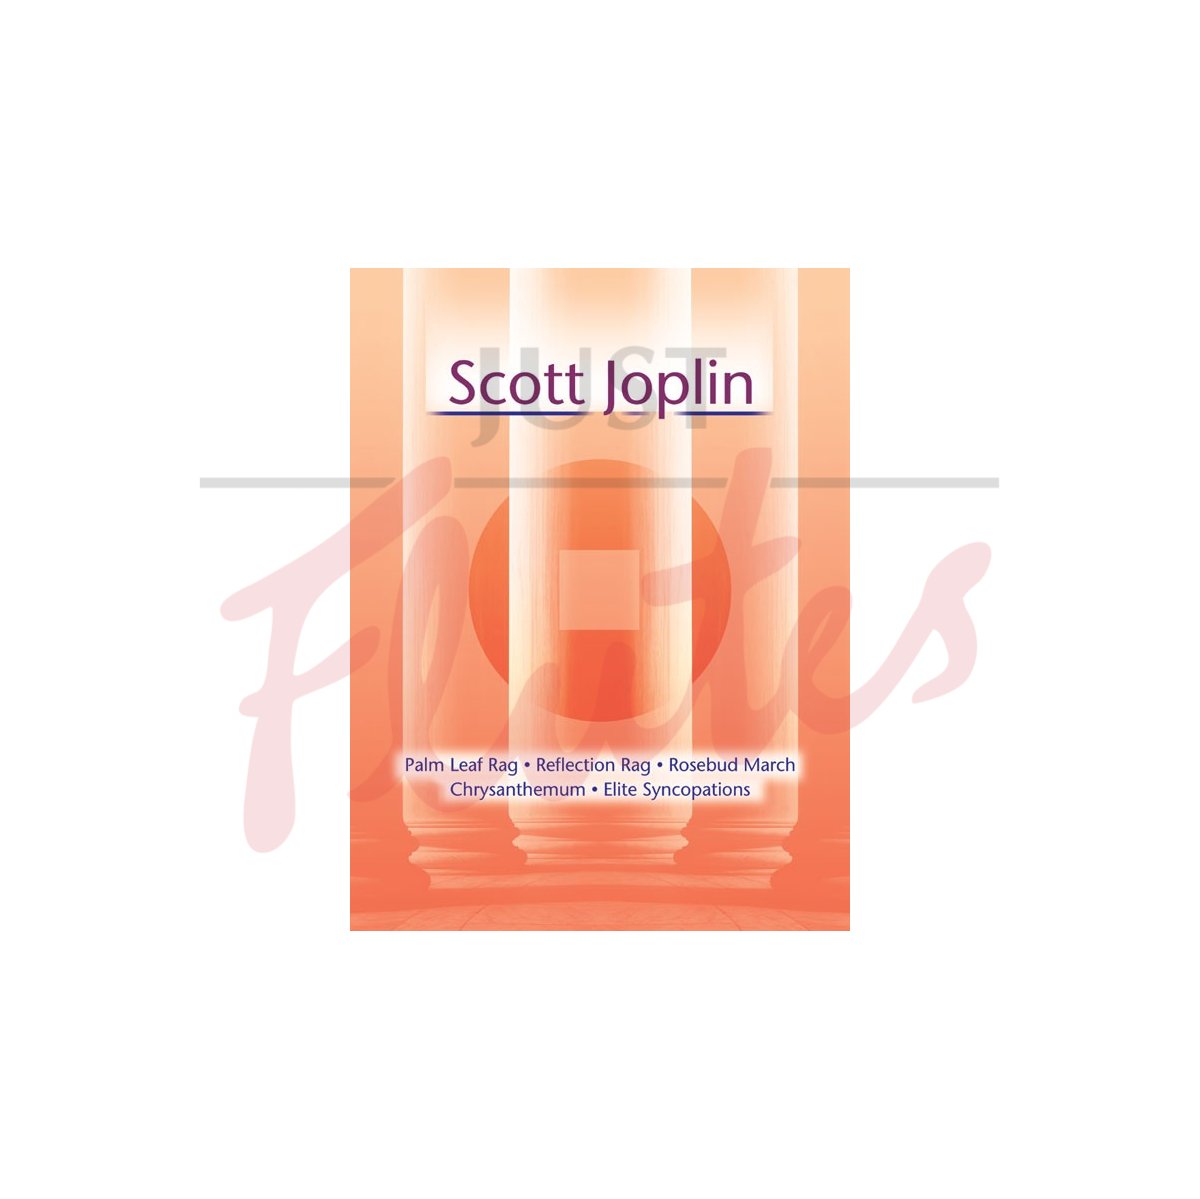 Scott Joplin - The Orange Book